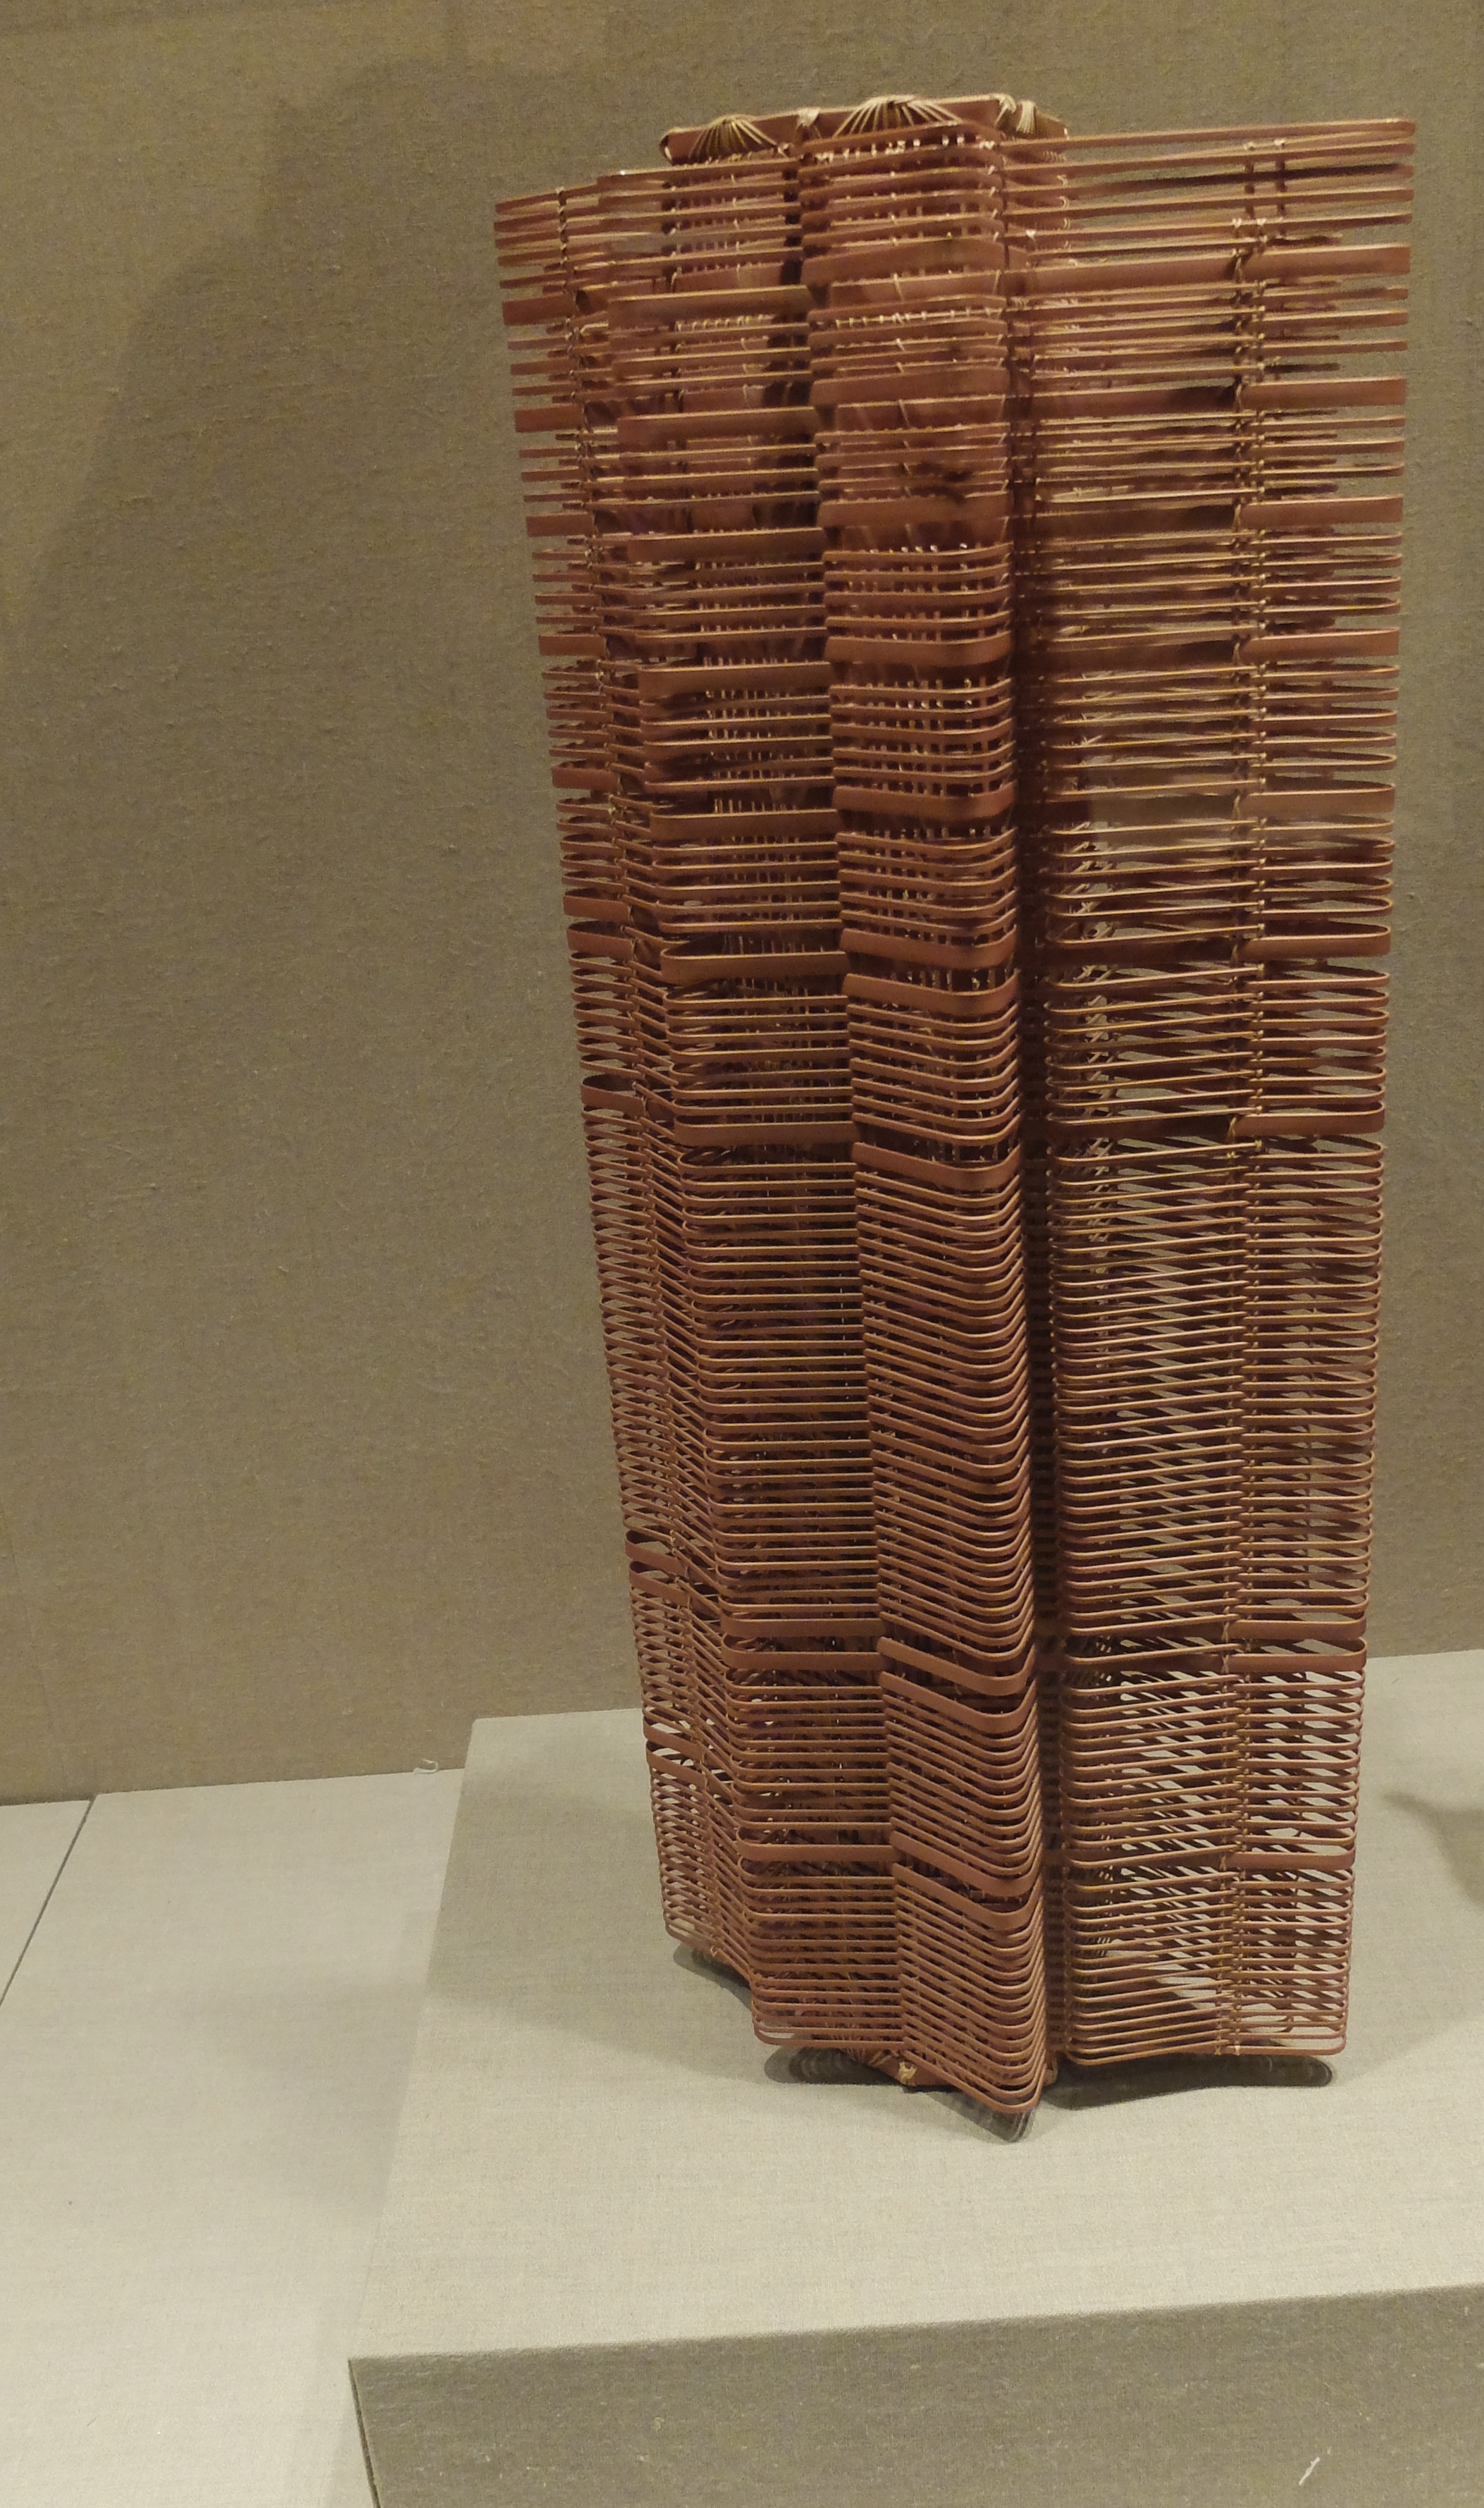 Skyscraper made of rattan, at The Met.